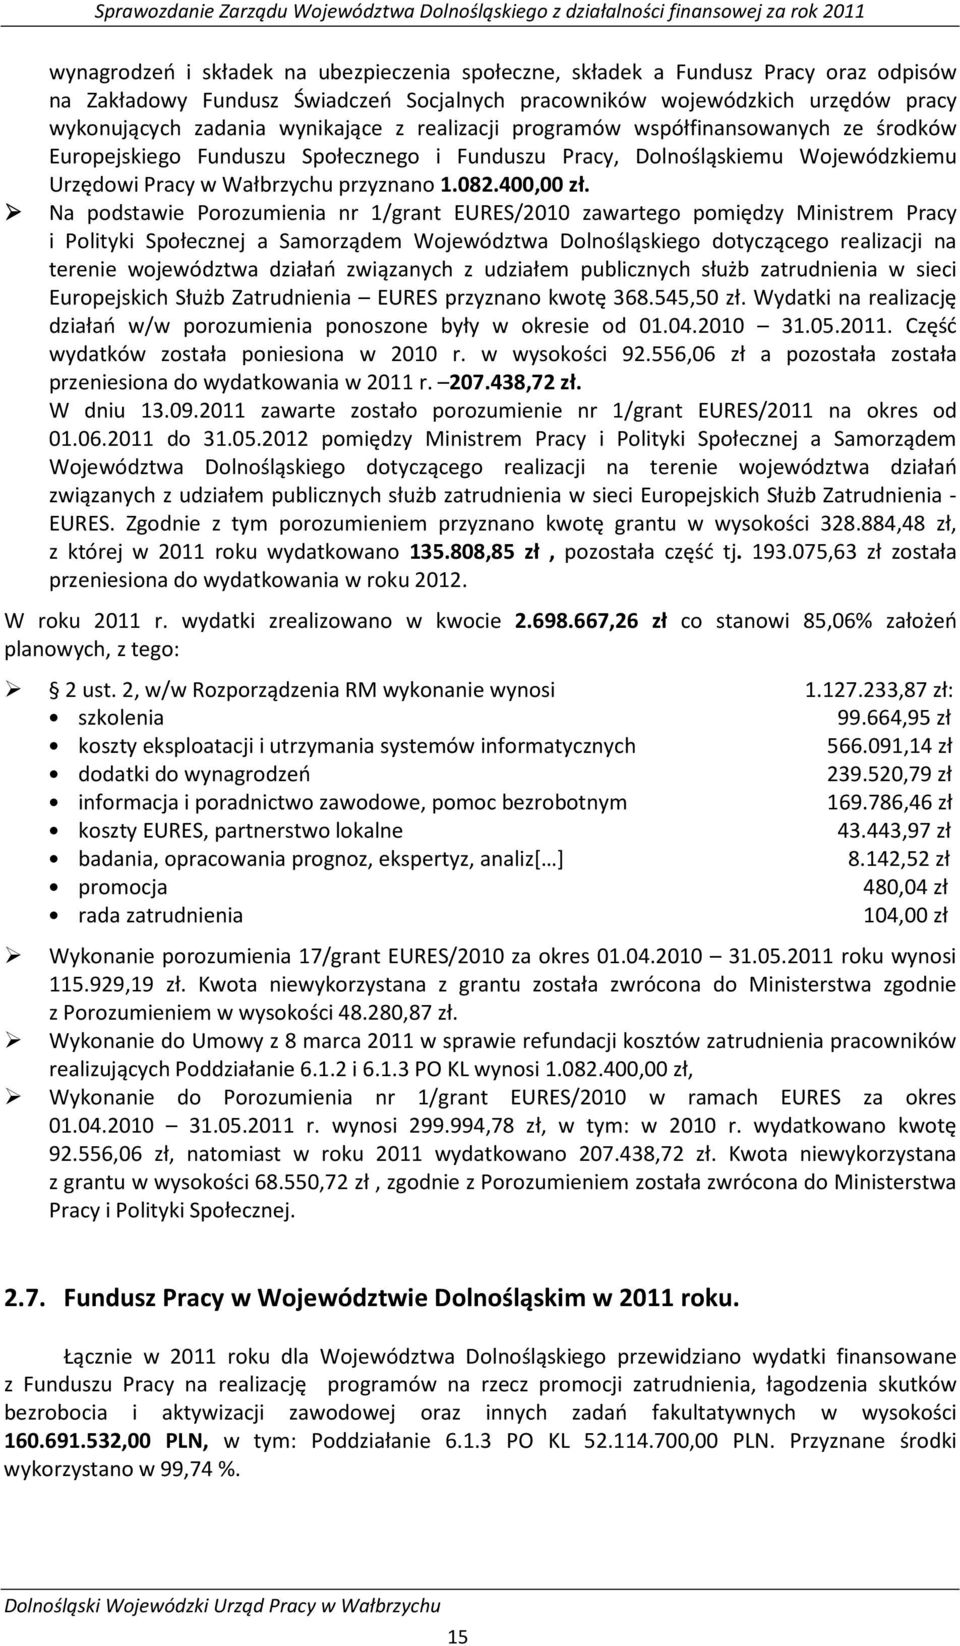 Na podstawie Porozumienia nr 1/grant EURES/2010 zawartego pomiędzy Ministrem Pracy i Polityki Społecznej a Samorządem Województwa Dolnośląskiego dotyczącego realizacji na terenie województwa działań